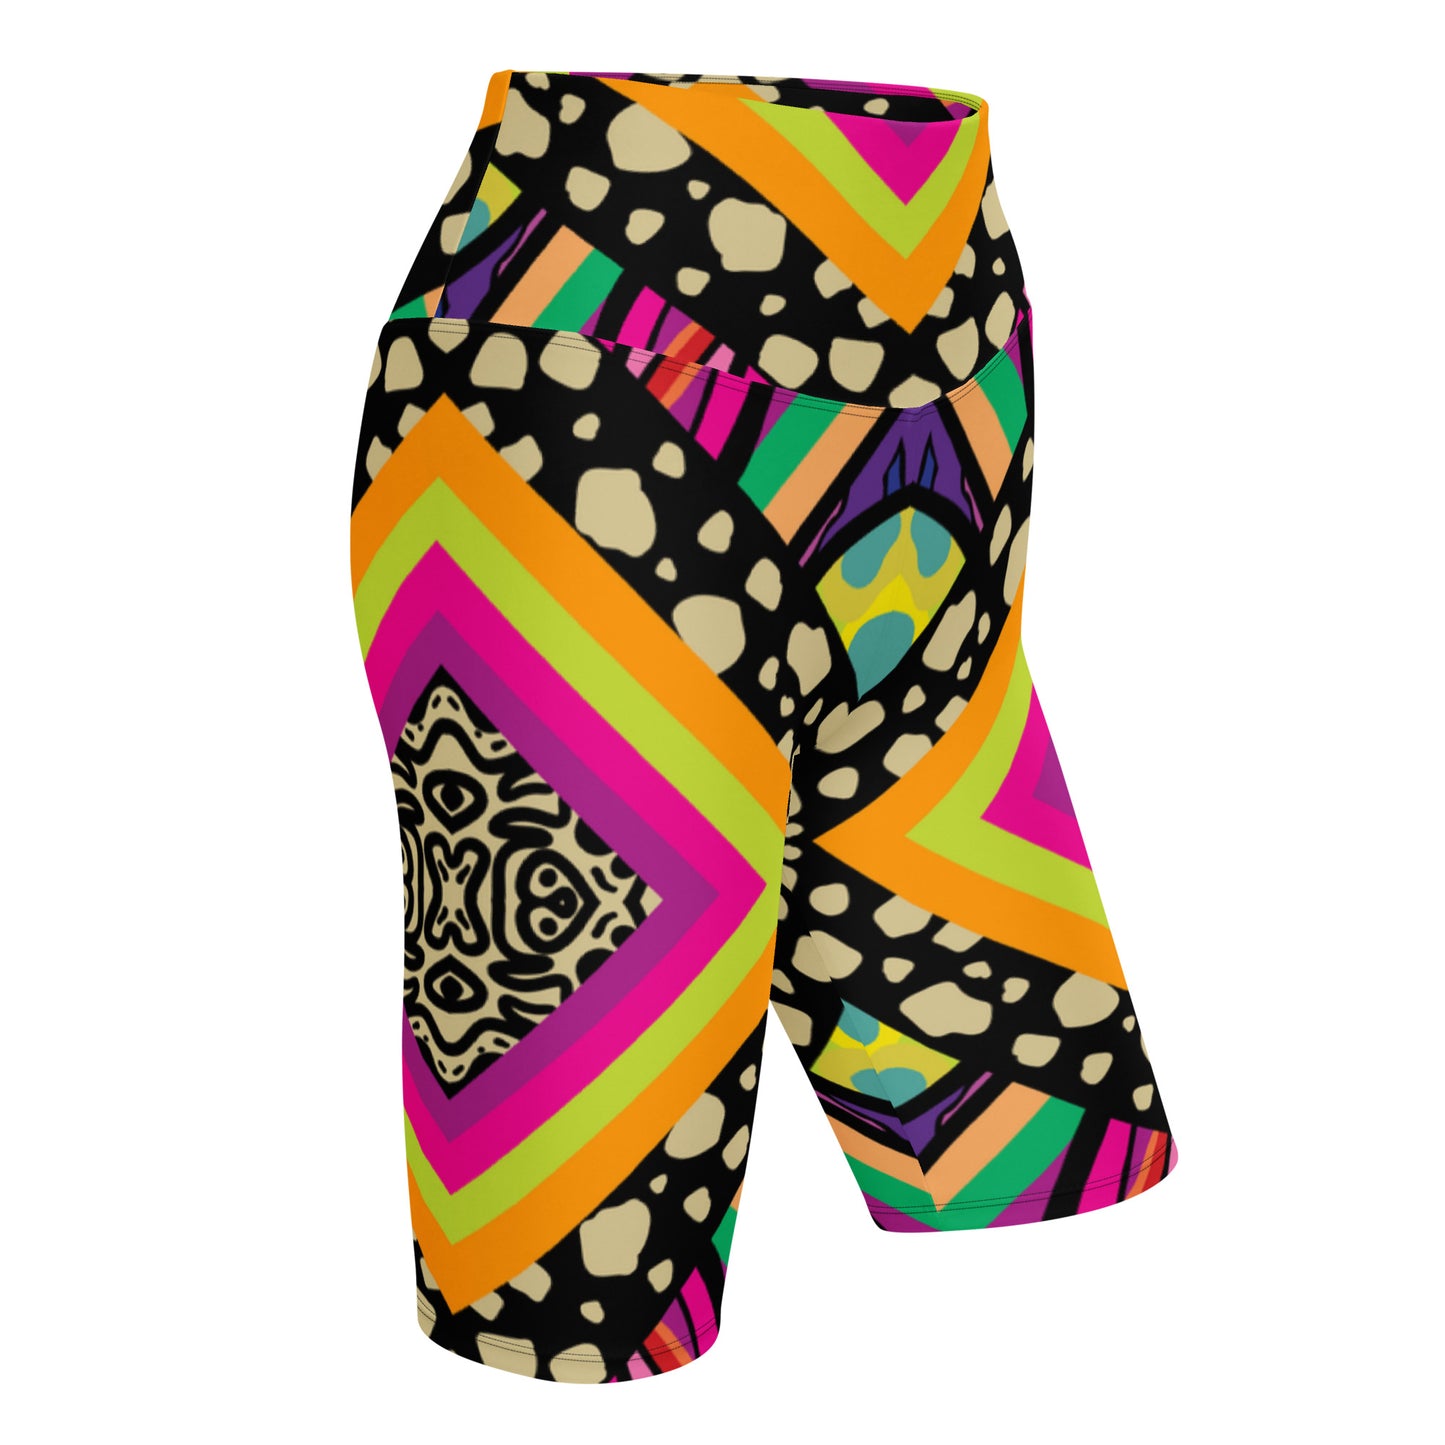 Mitchellopia Design- Biker Shorts